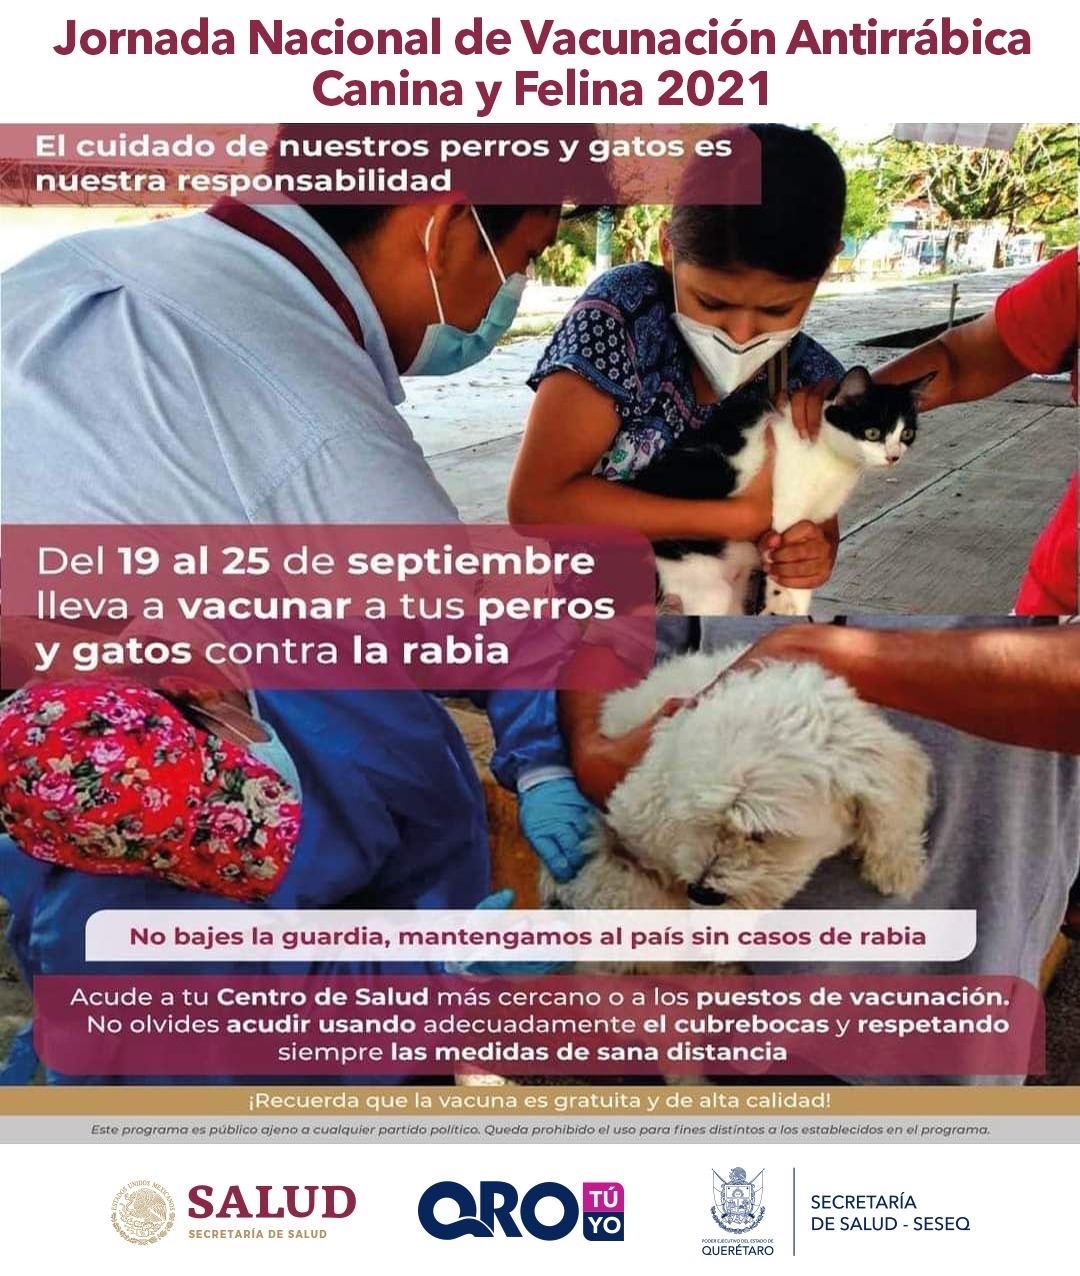 Del 19 al 25 de septiembre, la campaña de Vacunación Antirrábica Canina y Felina 2021 en Querétaro